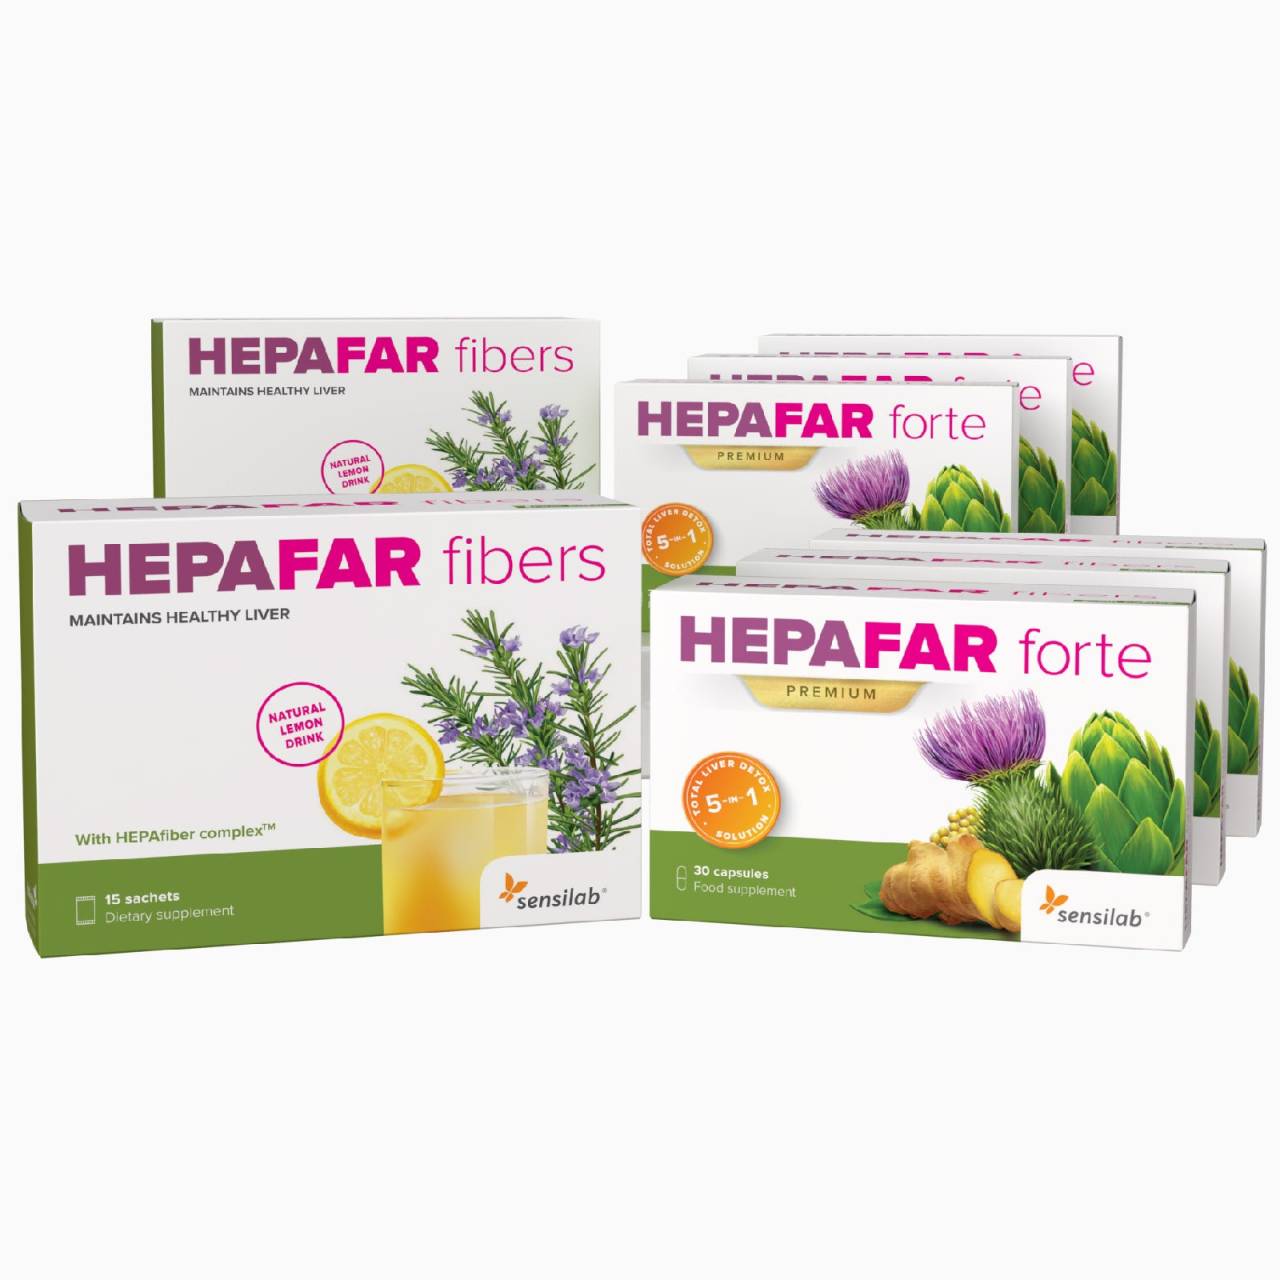 Hepafar Detox 3-Monatskur | Wirksam und sicher die Leber entgiften mit Mariendistel und Phospholipiden| 3-Monatsprogramm | Sensilab.